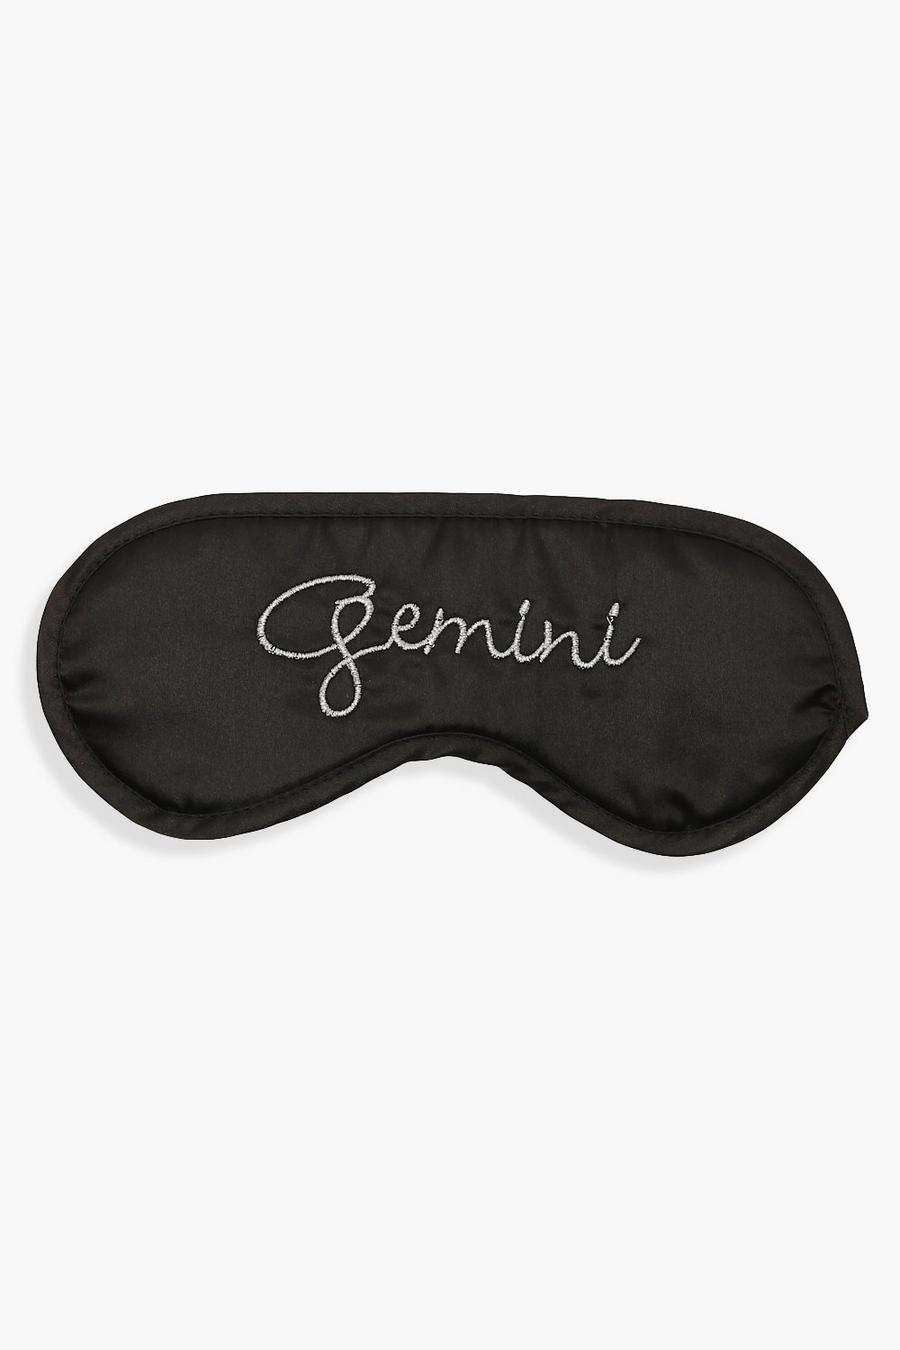 Gemini Satin Sleep Mask image number 1